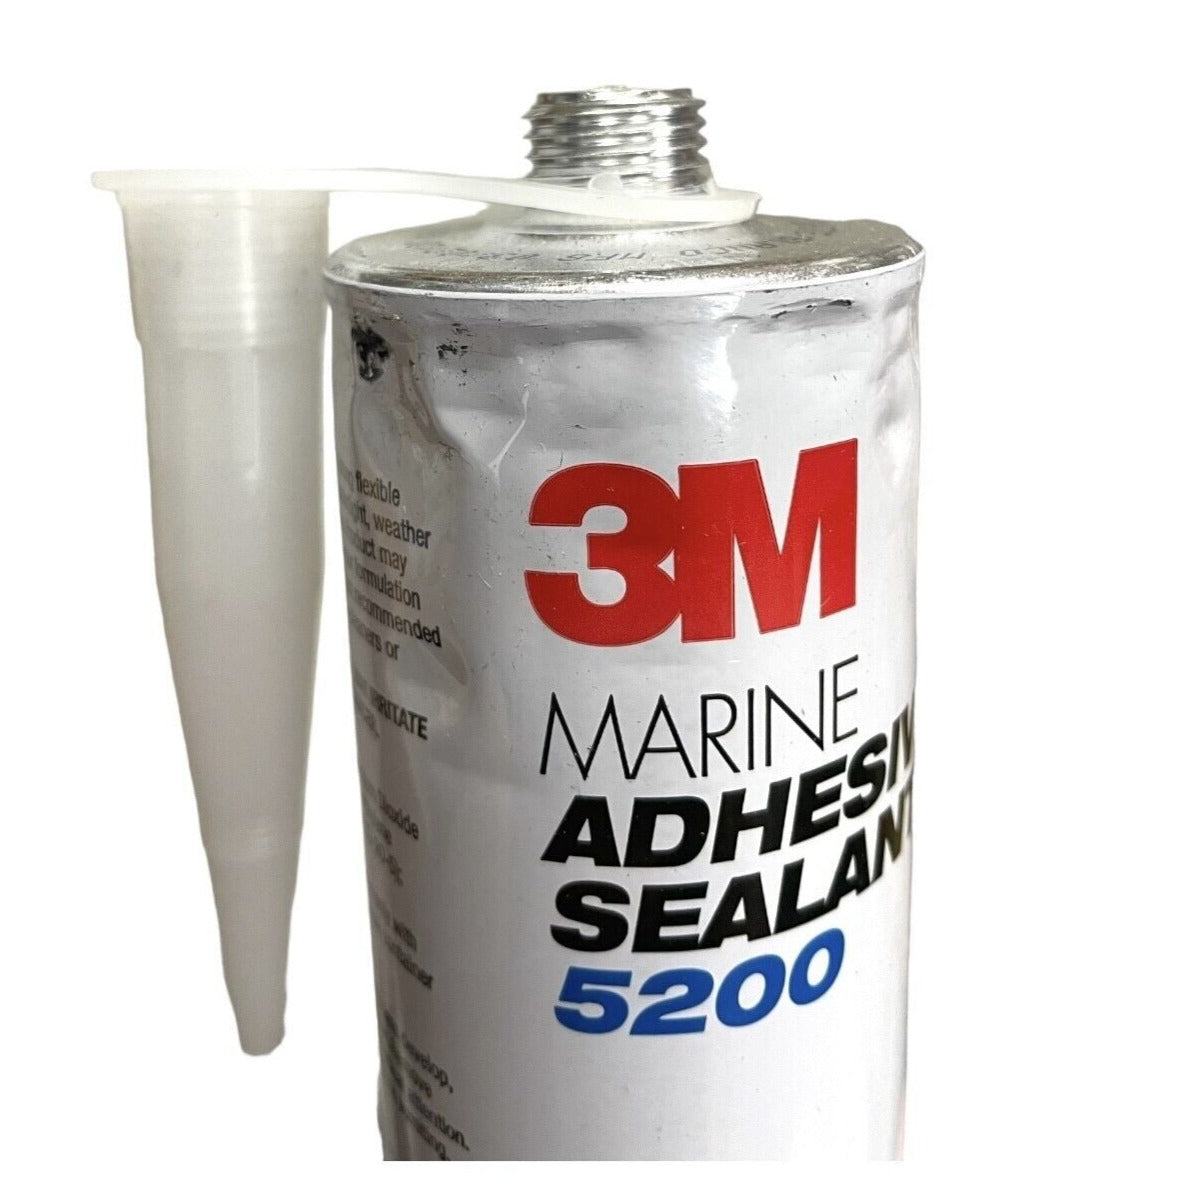 3M Marine Adhesive Sealant 5200 White